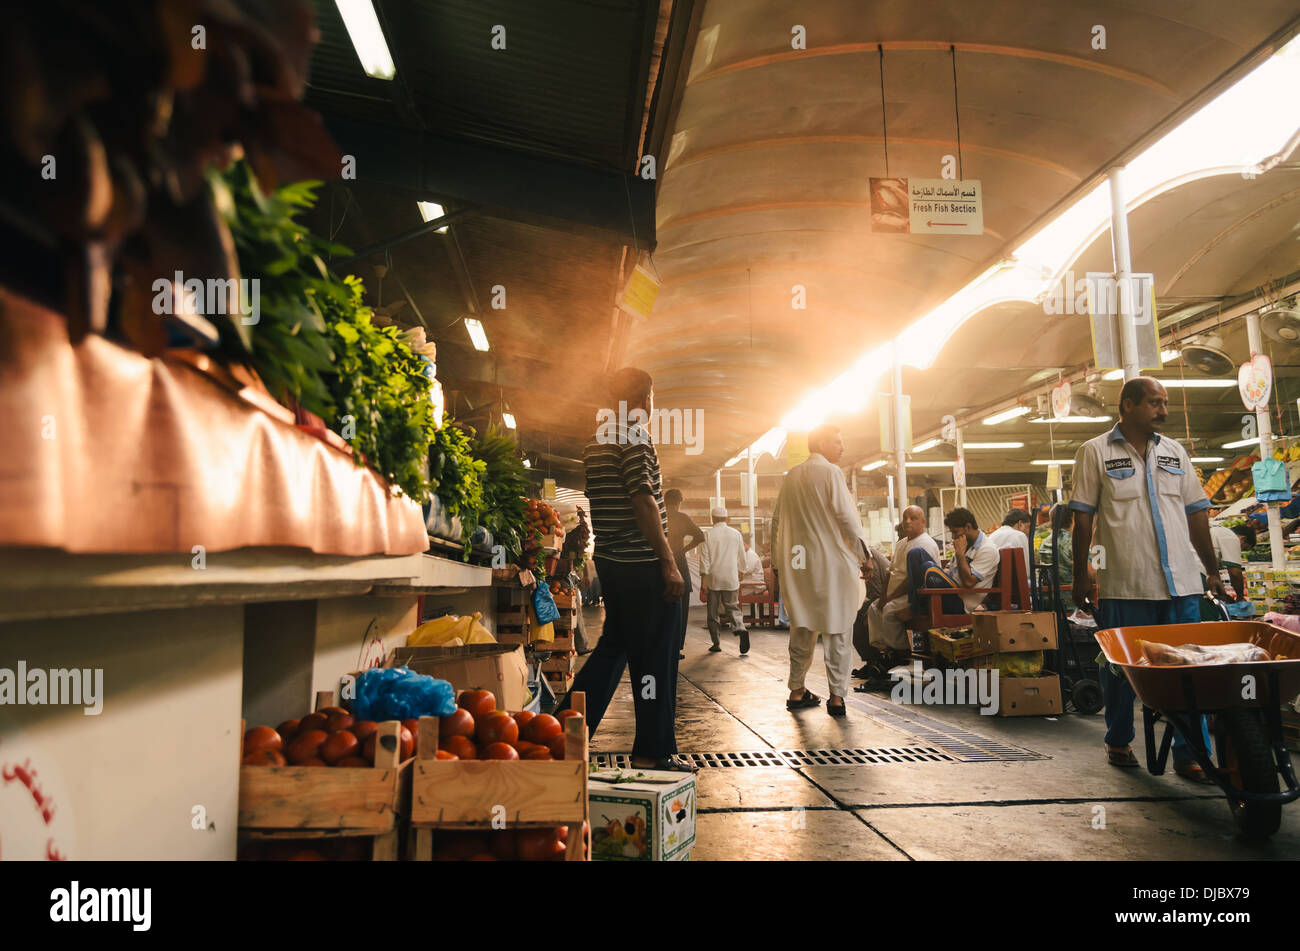 Les hommes arabes marcher le long d'un des couloirs du Deira au marché de fruits et légumes pendant le lever du soleil. Dubaï, Émirats arabes unis. Banque D'Images